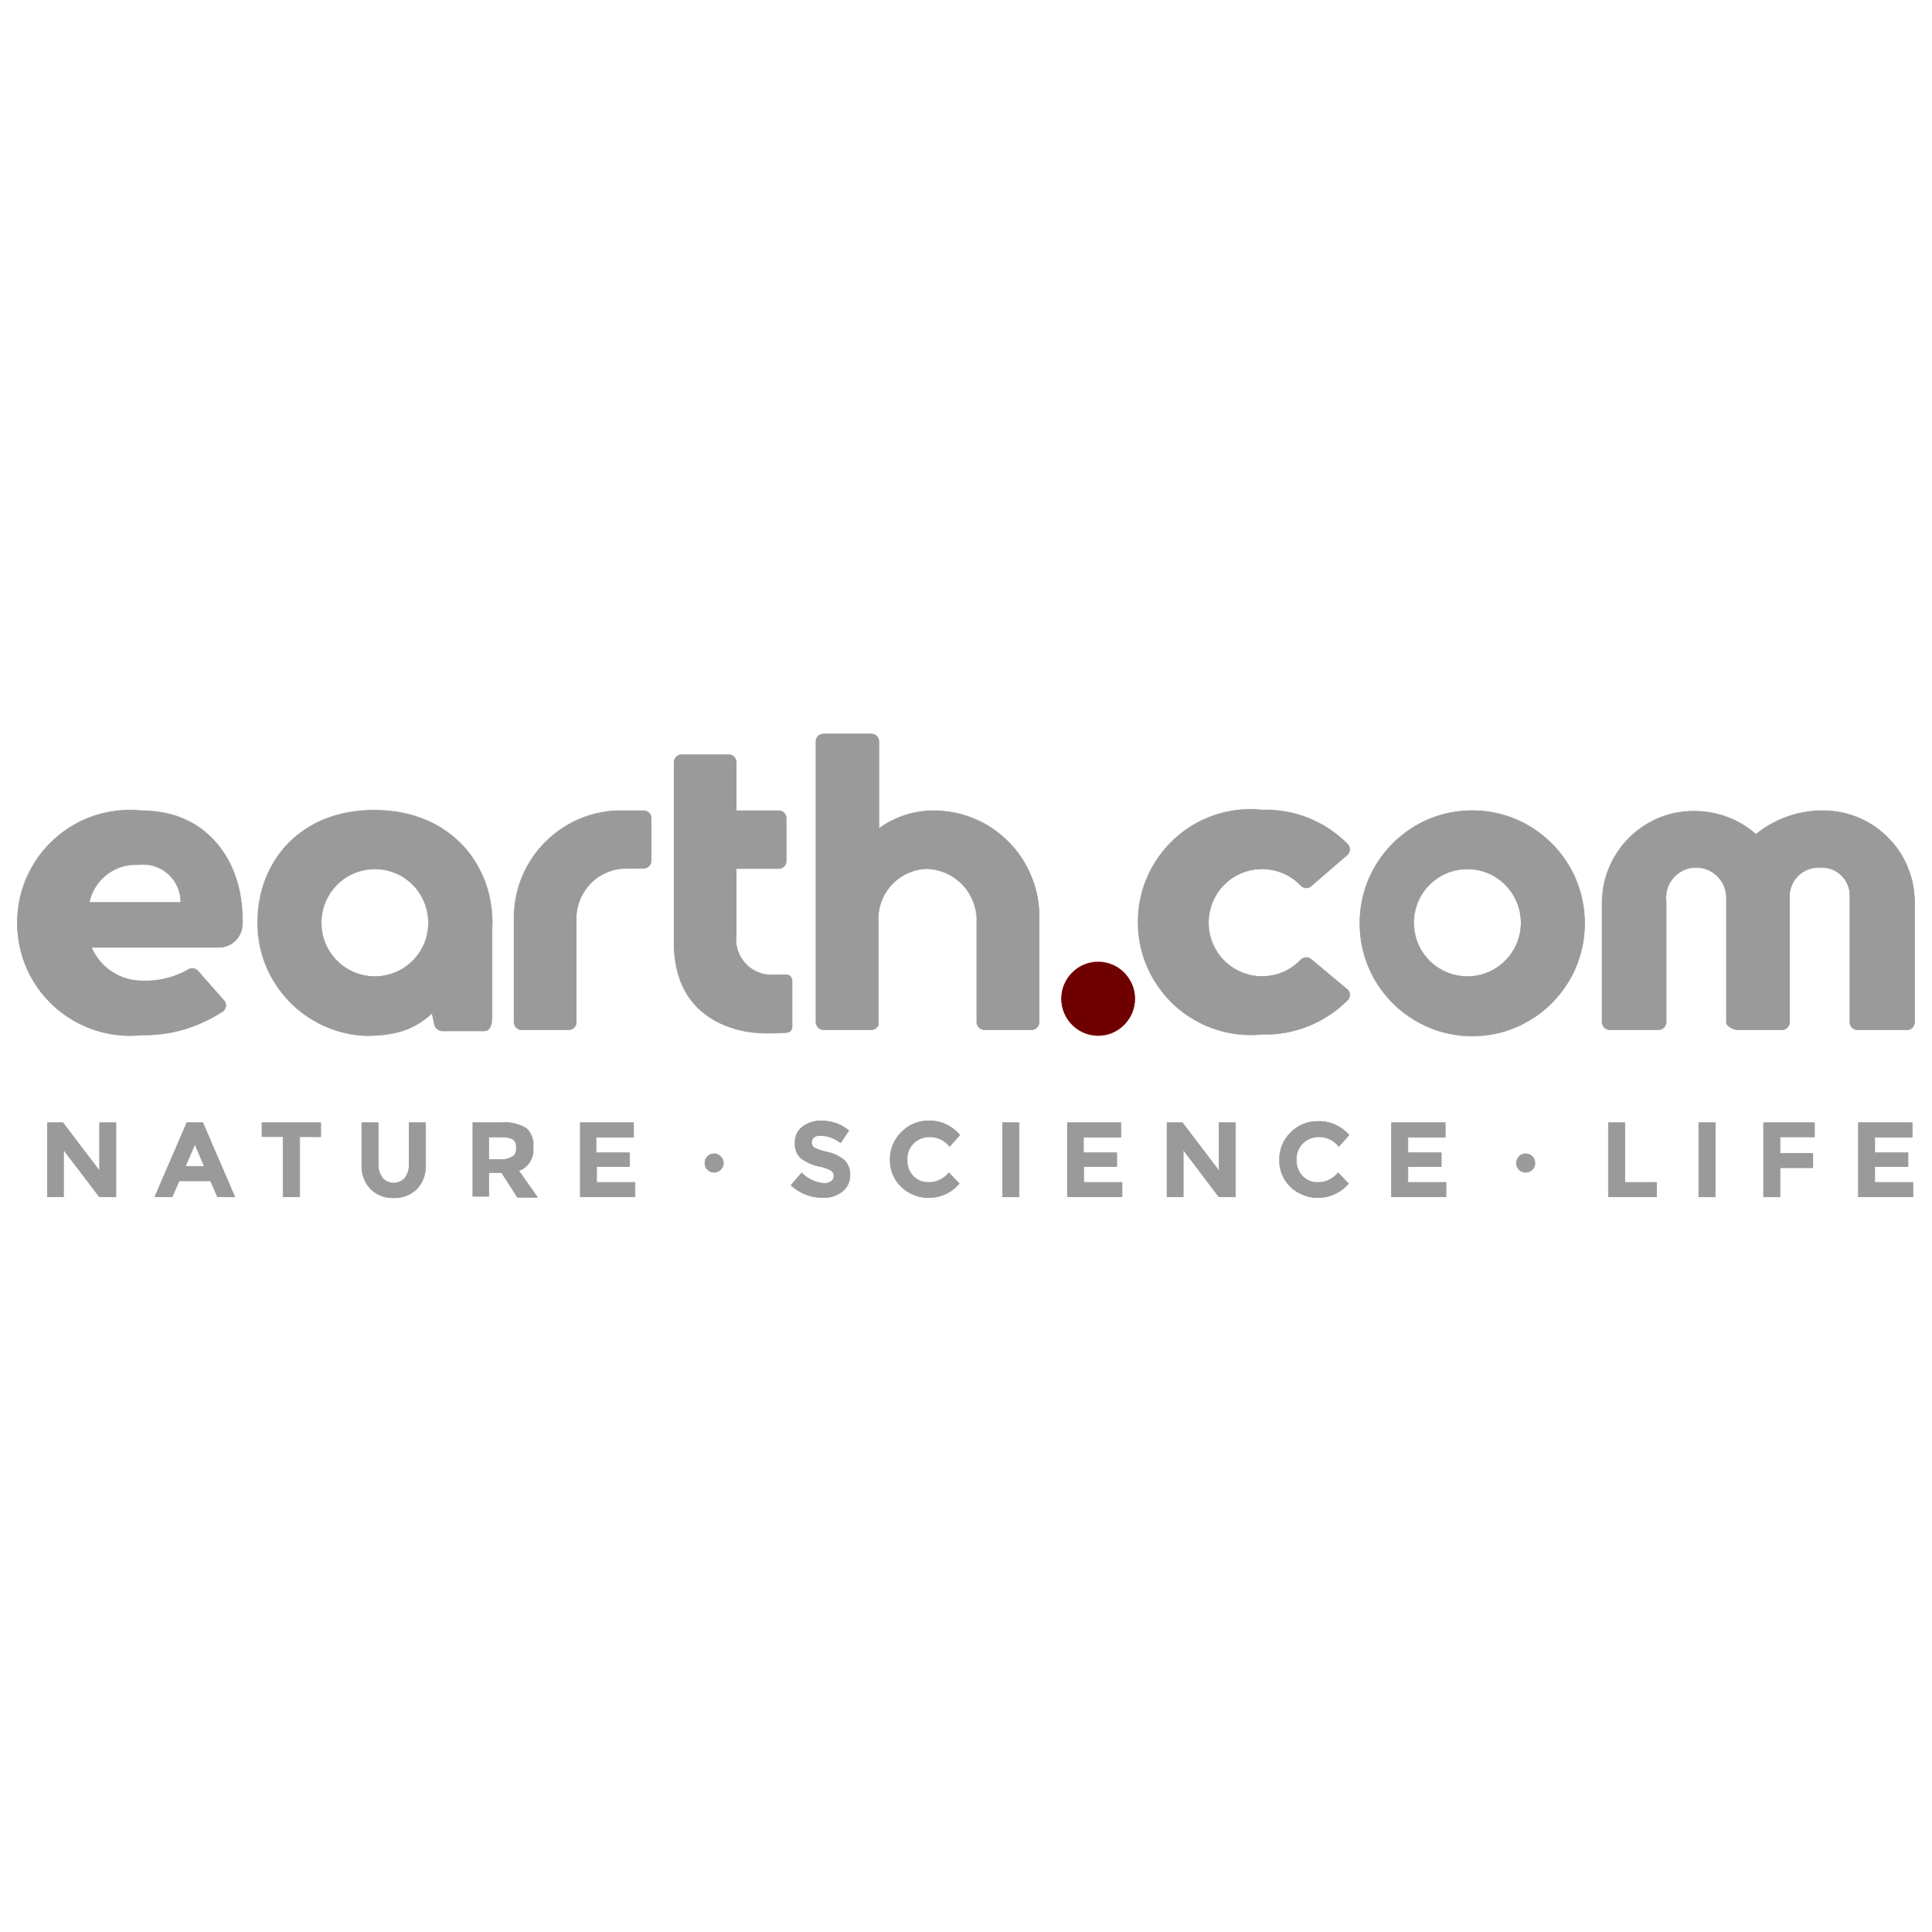 Earth.com White Tagline Logo Transparent Photo